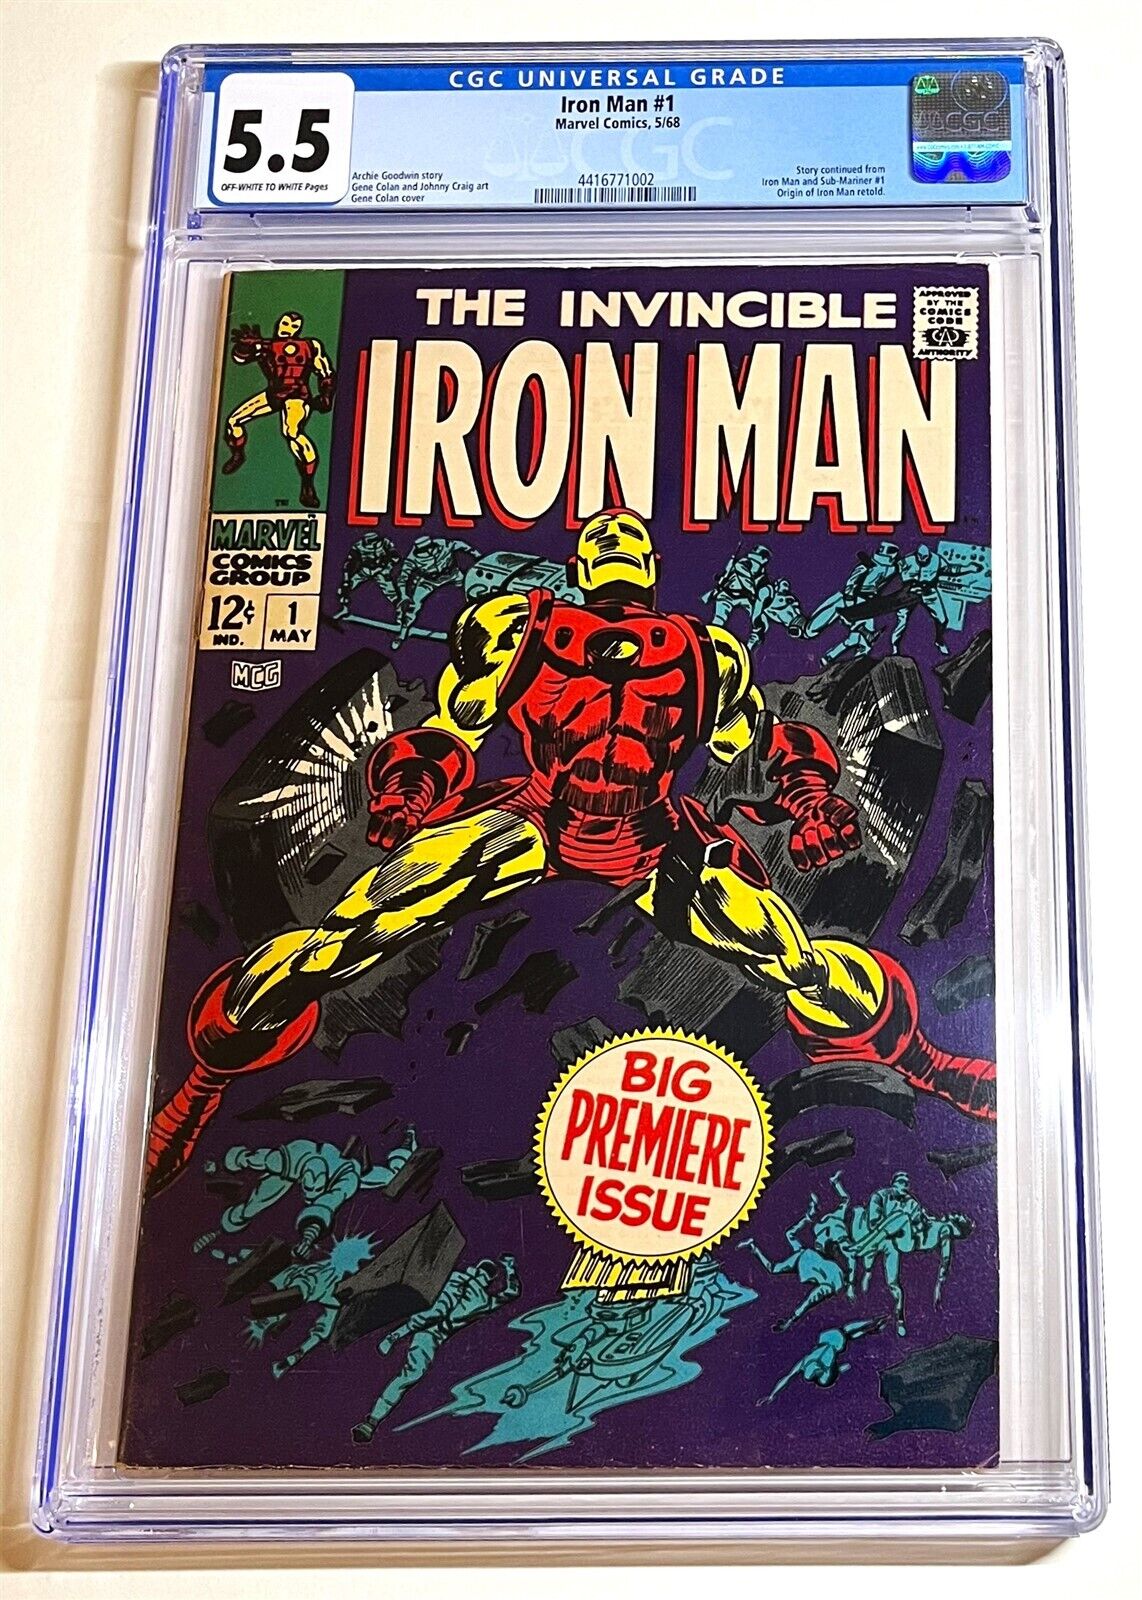 IRON MAN #1 ~ Original Series Debut 1968 Marvel Comics ~ CGC 5.5 nice copy